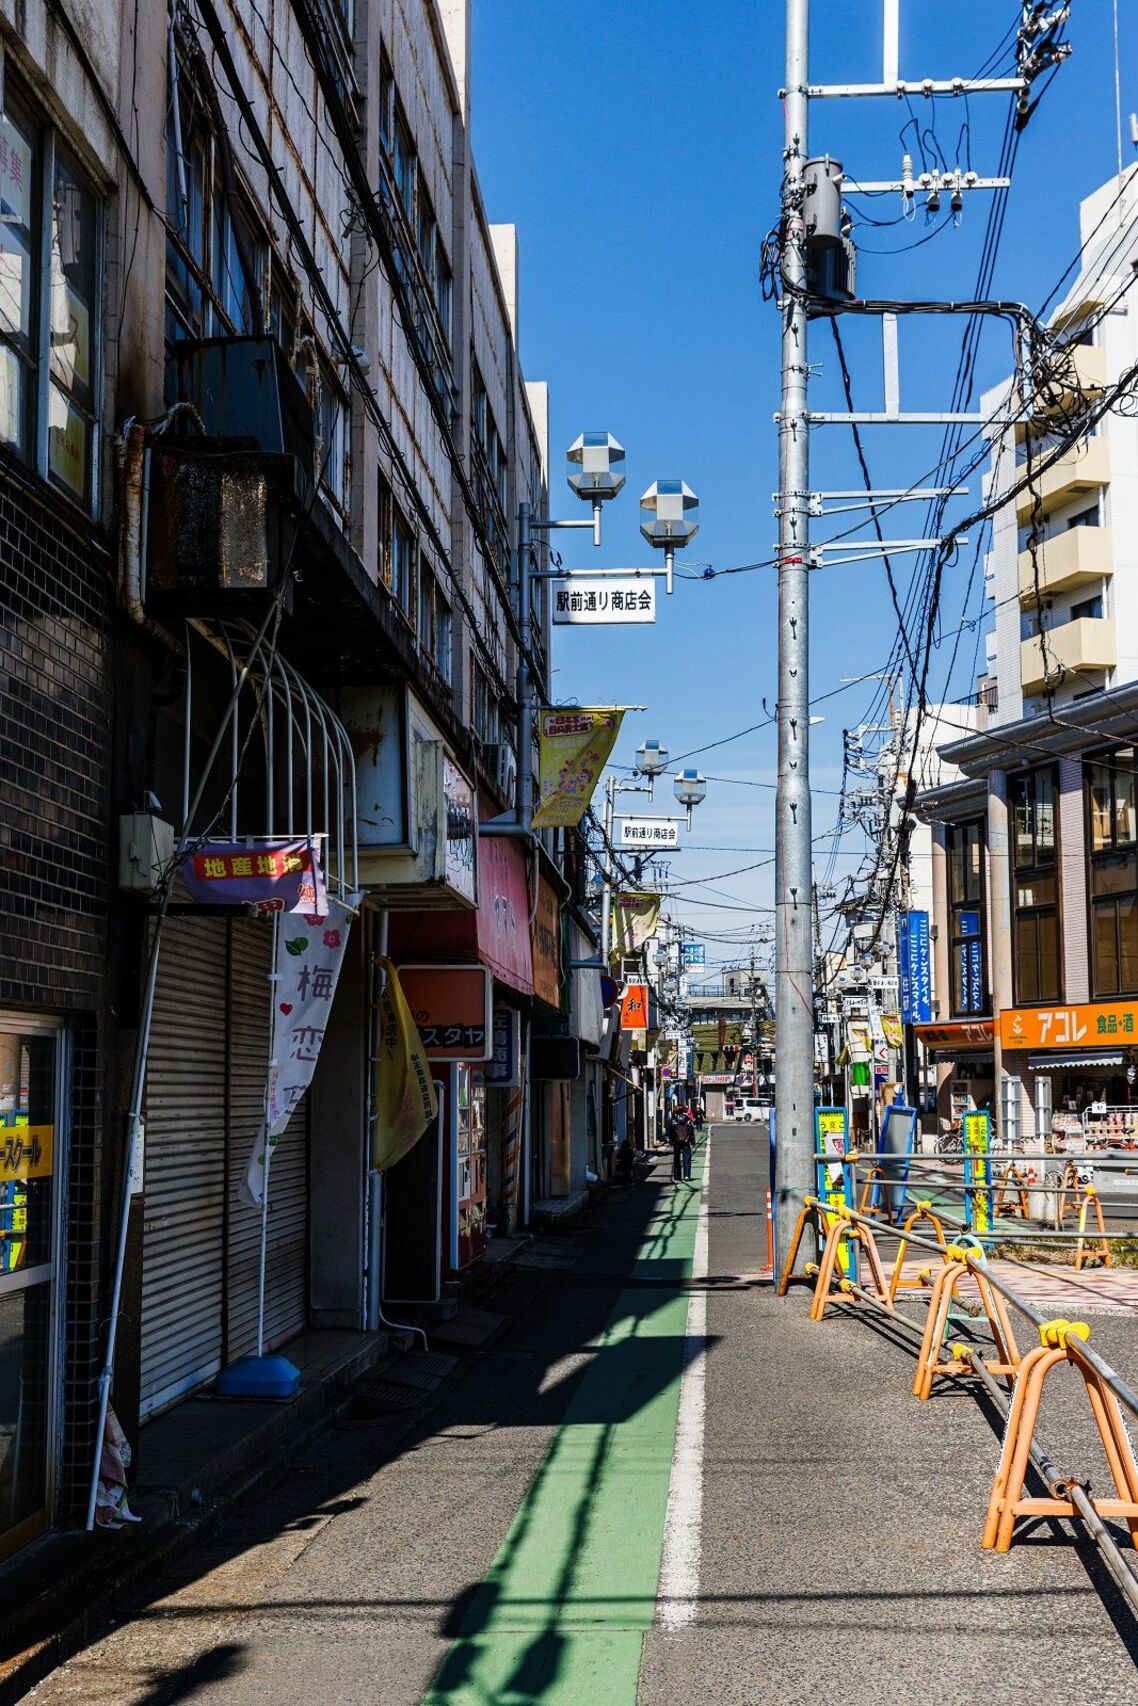 鶴瀬駅の近くには昔の名残を感じる商店街が残る